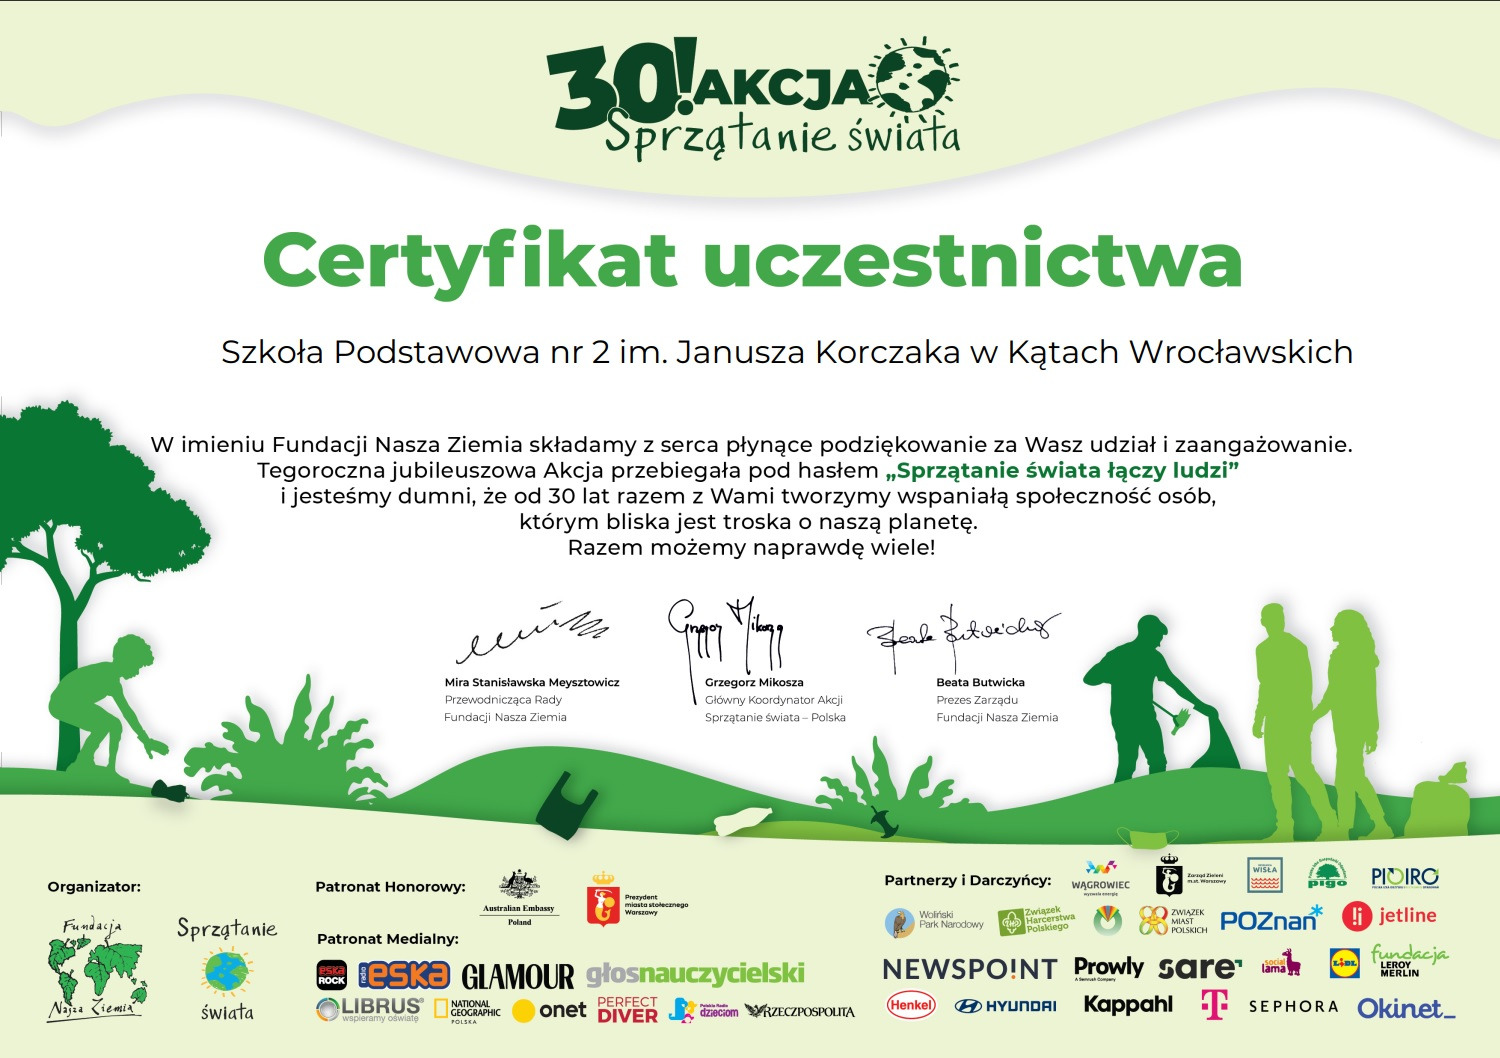 Certyfikat uczestnictwa w 30. akcji "Sprzątania świata - Polska" - Obrazek 1